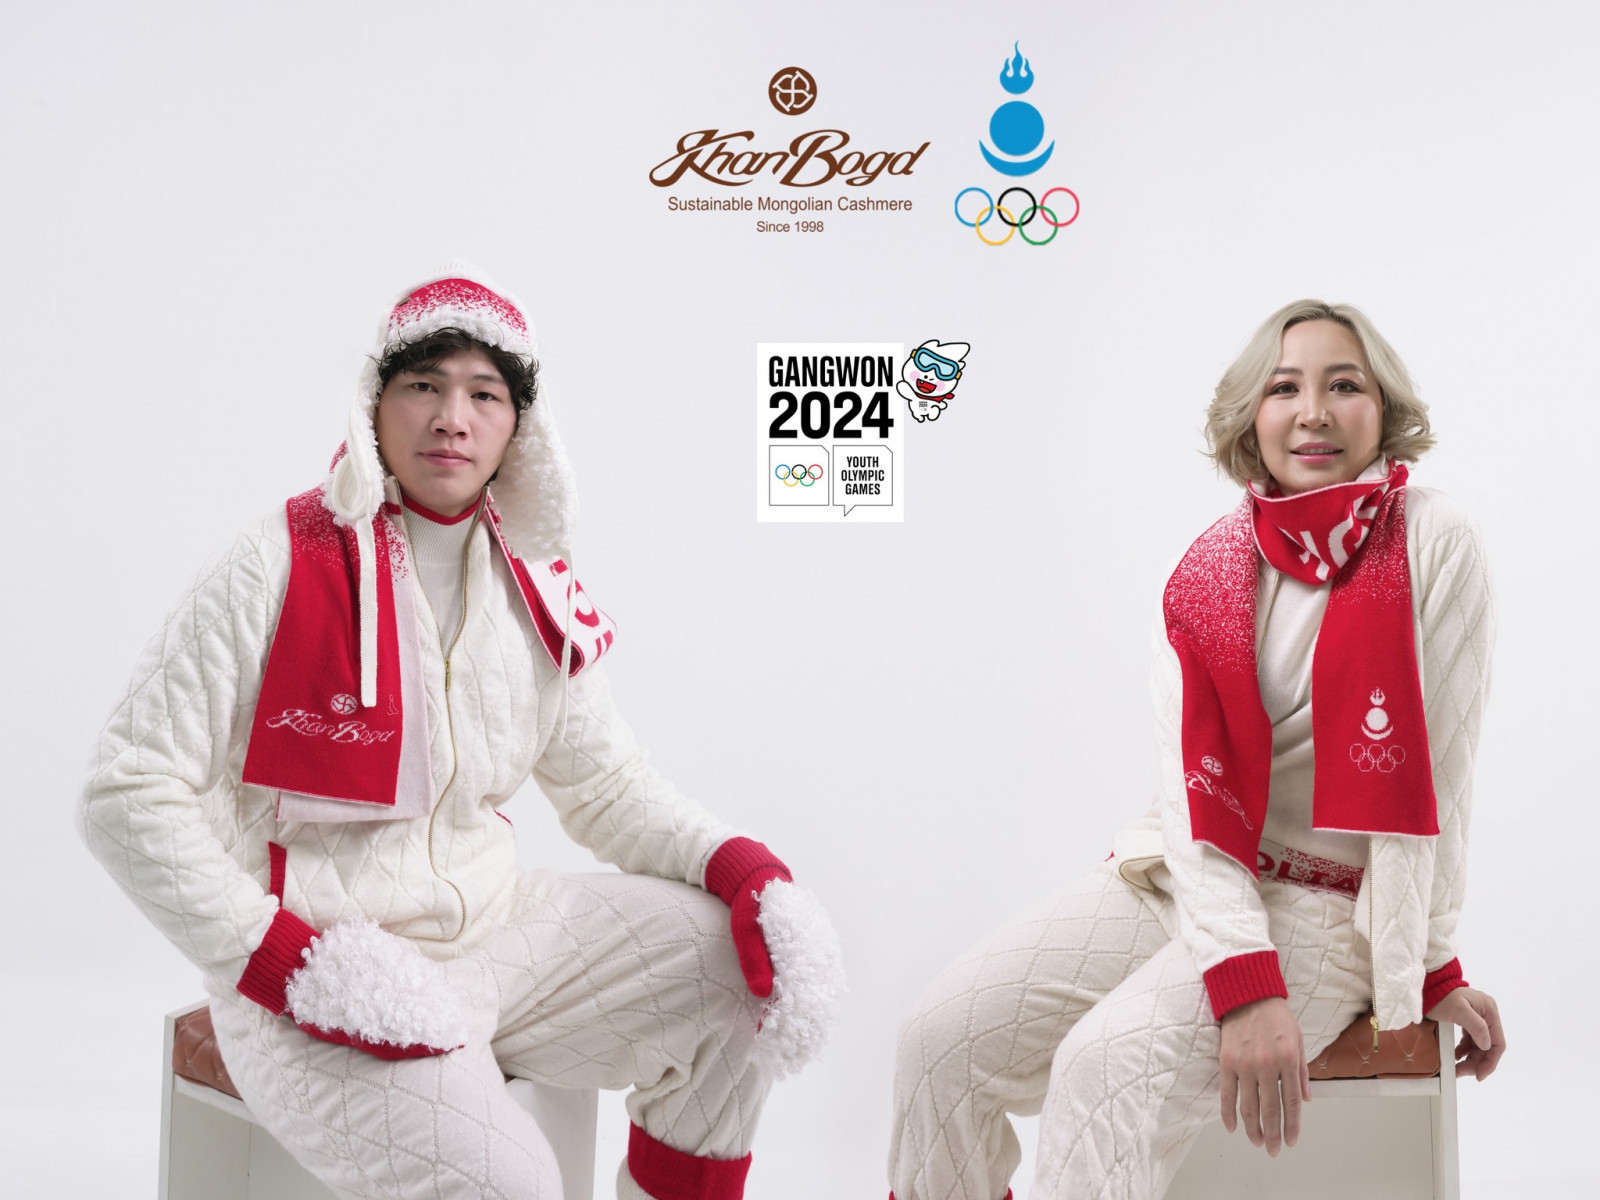 "Канвон 2024" олимпод монголын баг тамирчид "Ханбогд кашимер" брэндийн урласан бүтээгдэхүүнийг өмсөнө 